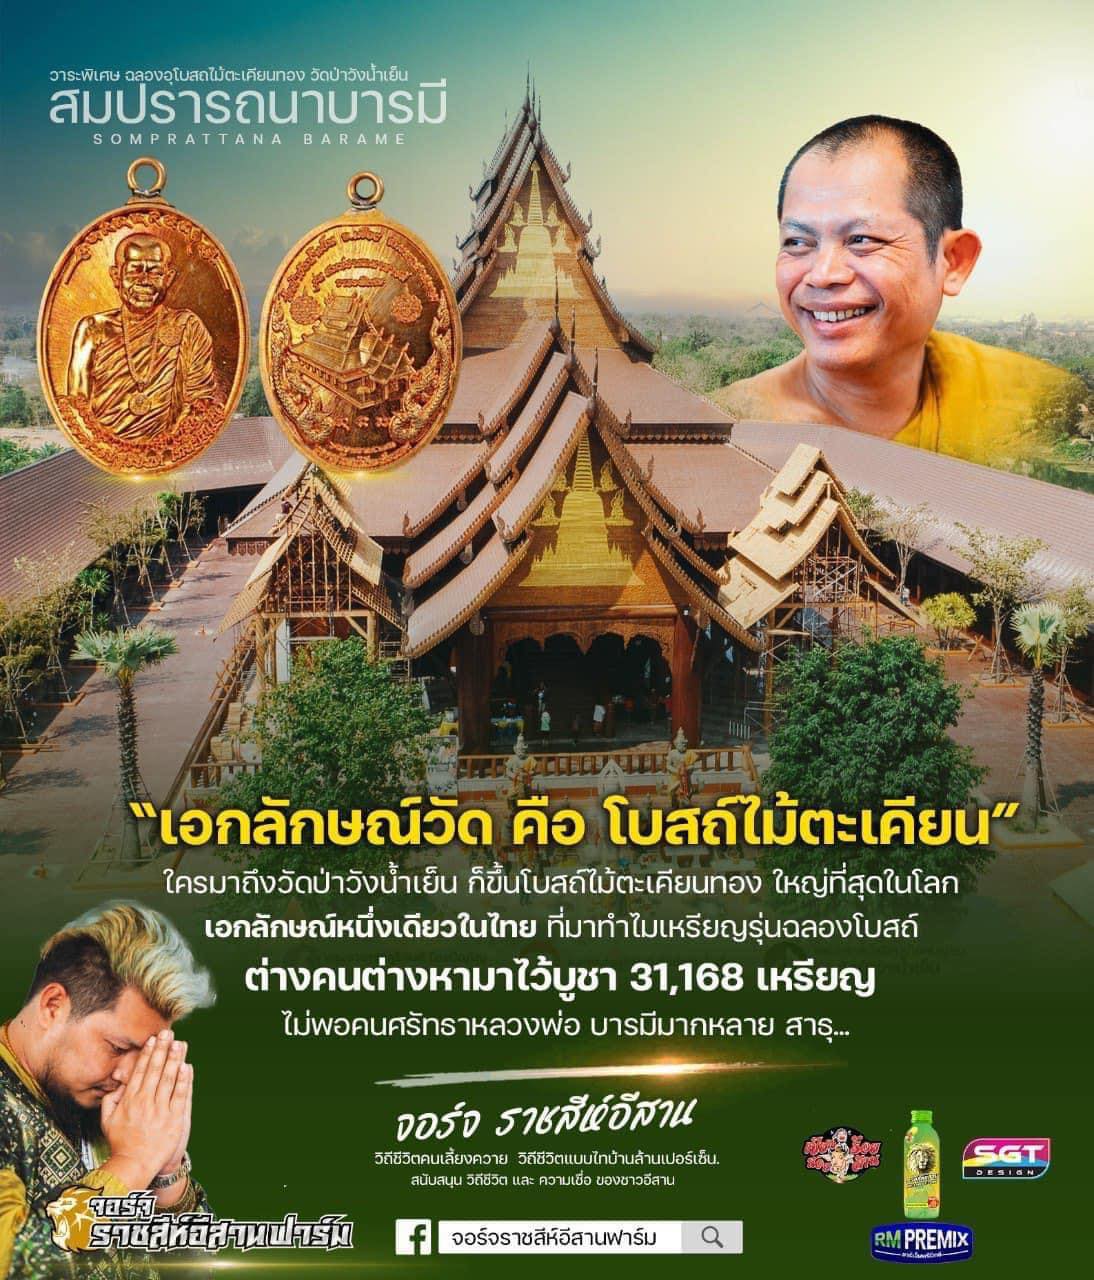 เหรียญฉลองโบสถ์ "สมปรารถนาบารมี" (รุ่นฉลองโบสถ์ไม้ตะเคียนทอง) วัดพุทธวนาราม (วัดป่าวังน้ำเย็น) ปลุกเสกข้ามคืนโดยพระมหาเถระ พระเกจิคณาจารย์ทั่วประเทศไทย 1 วัดสร้างได้เพียงครั้งเดียวเท่านั้น ถวายรายได้ เป็นเงิน 9,831,766 บาท